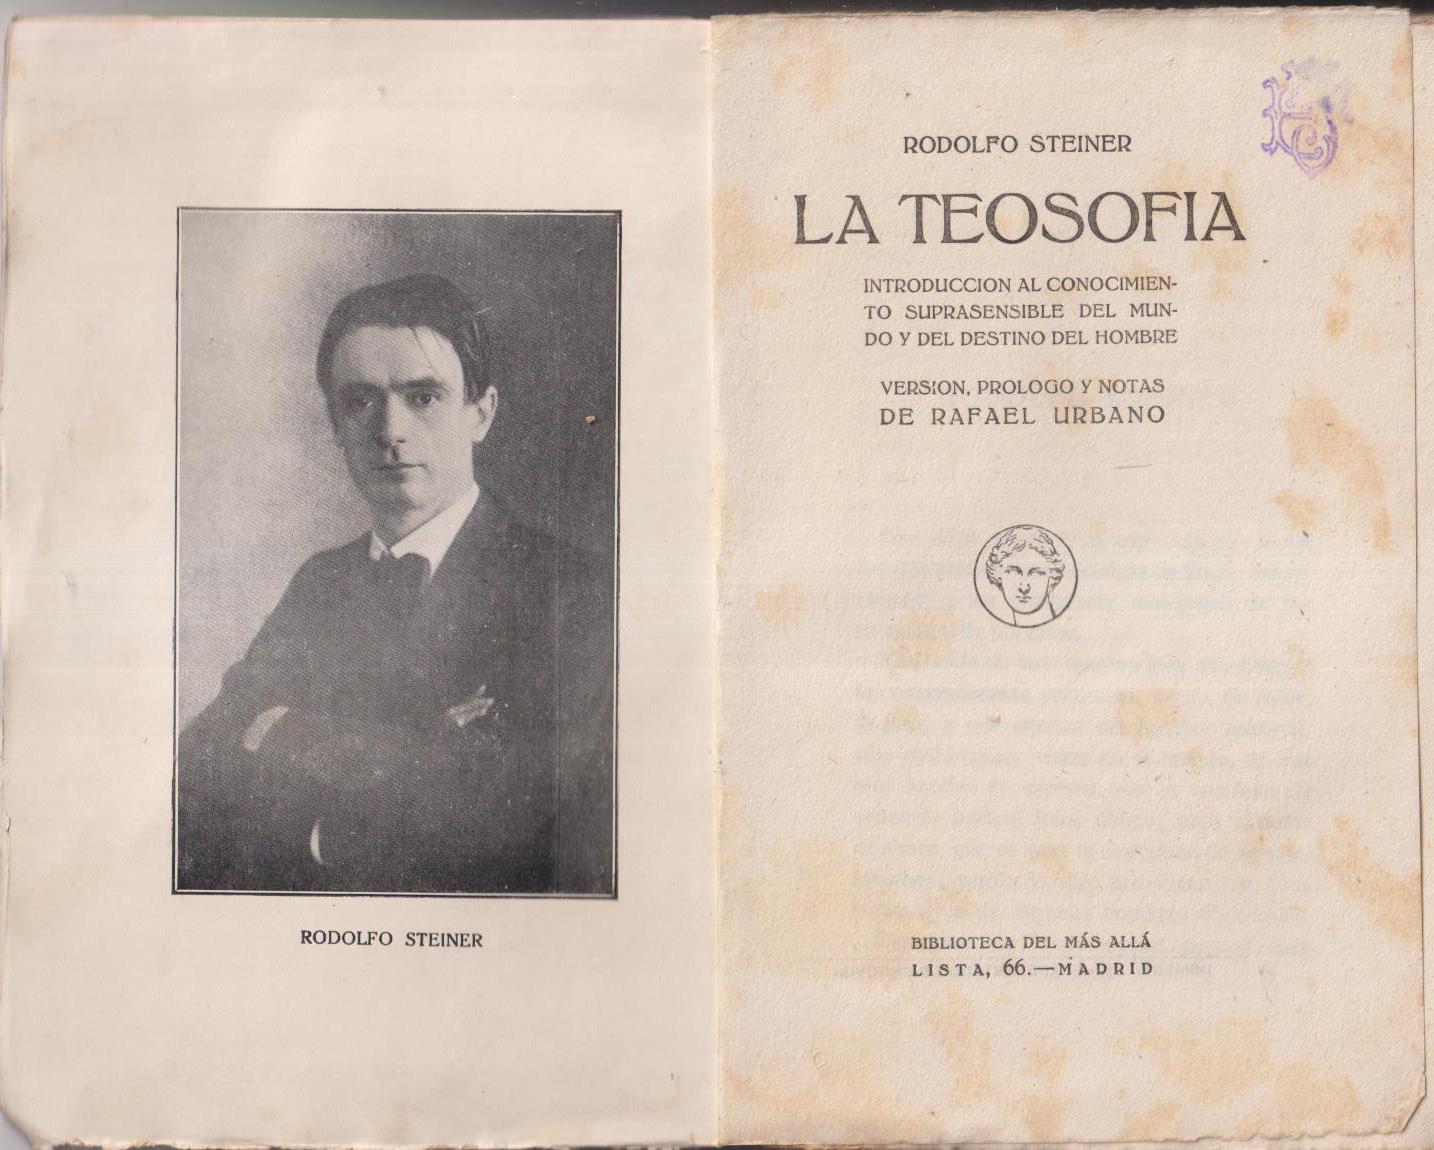 Rodolfo Steiner. La Teosofía. Biblioteca del Más Allá, Madrid (1928)